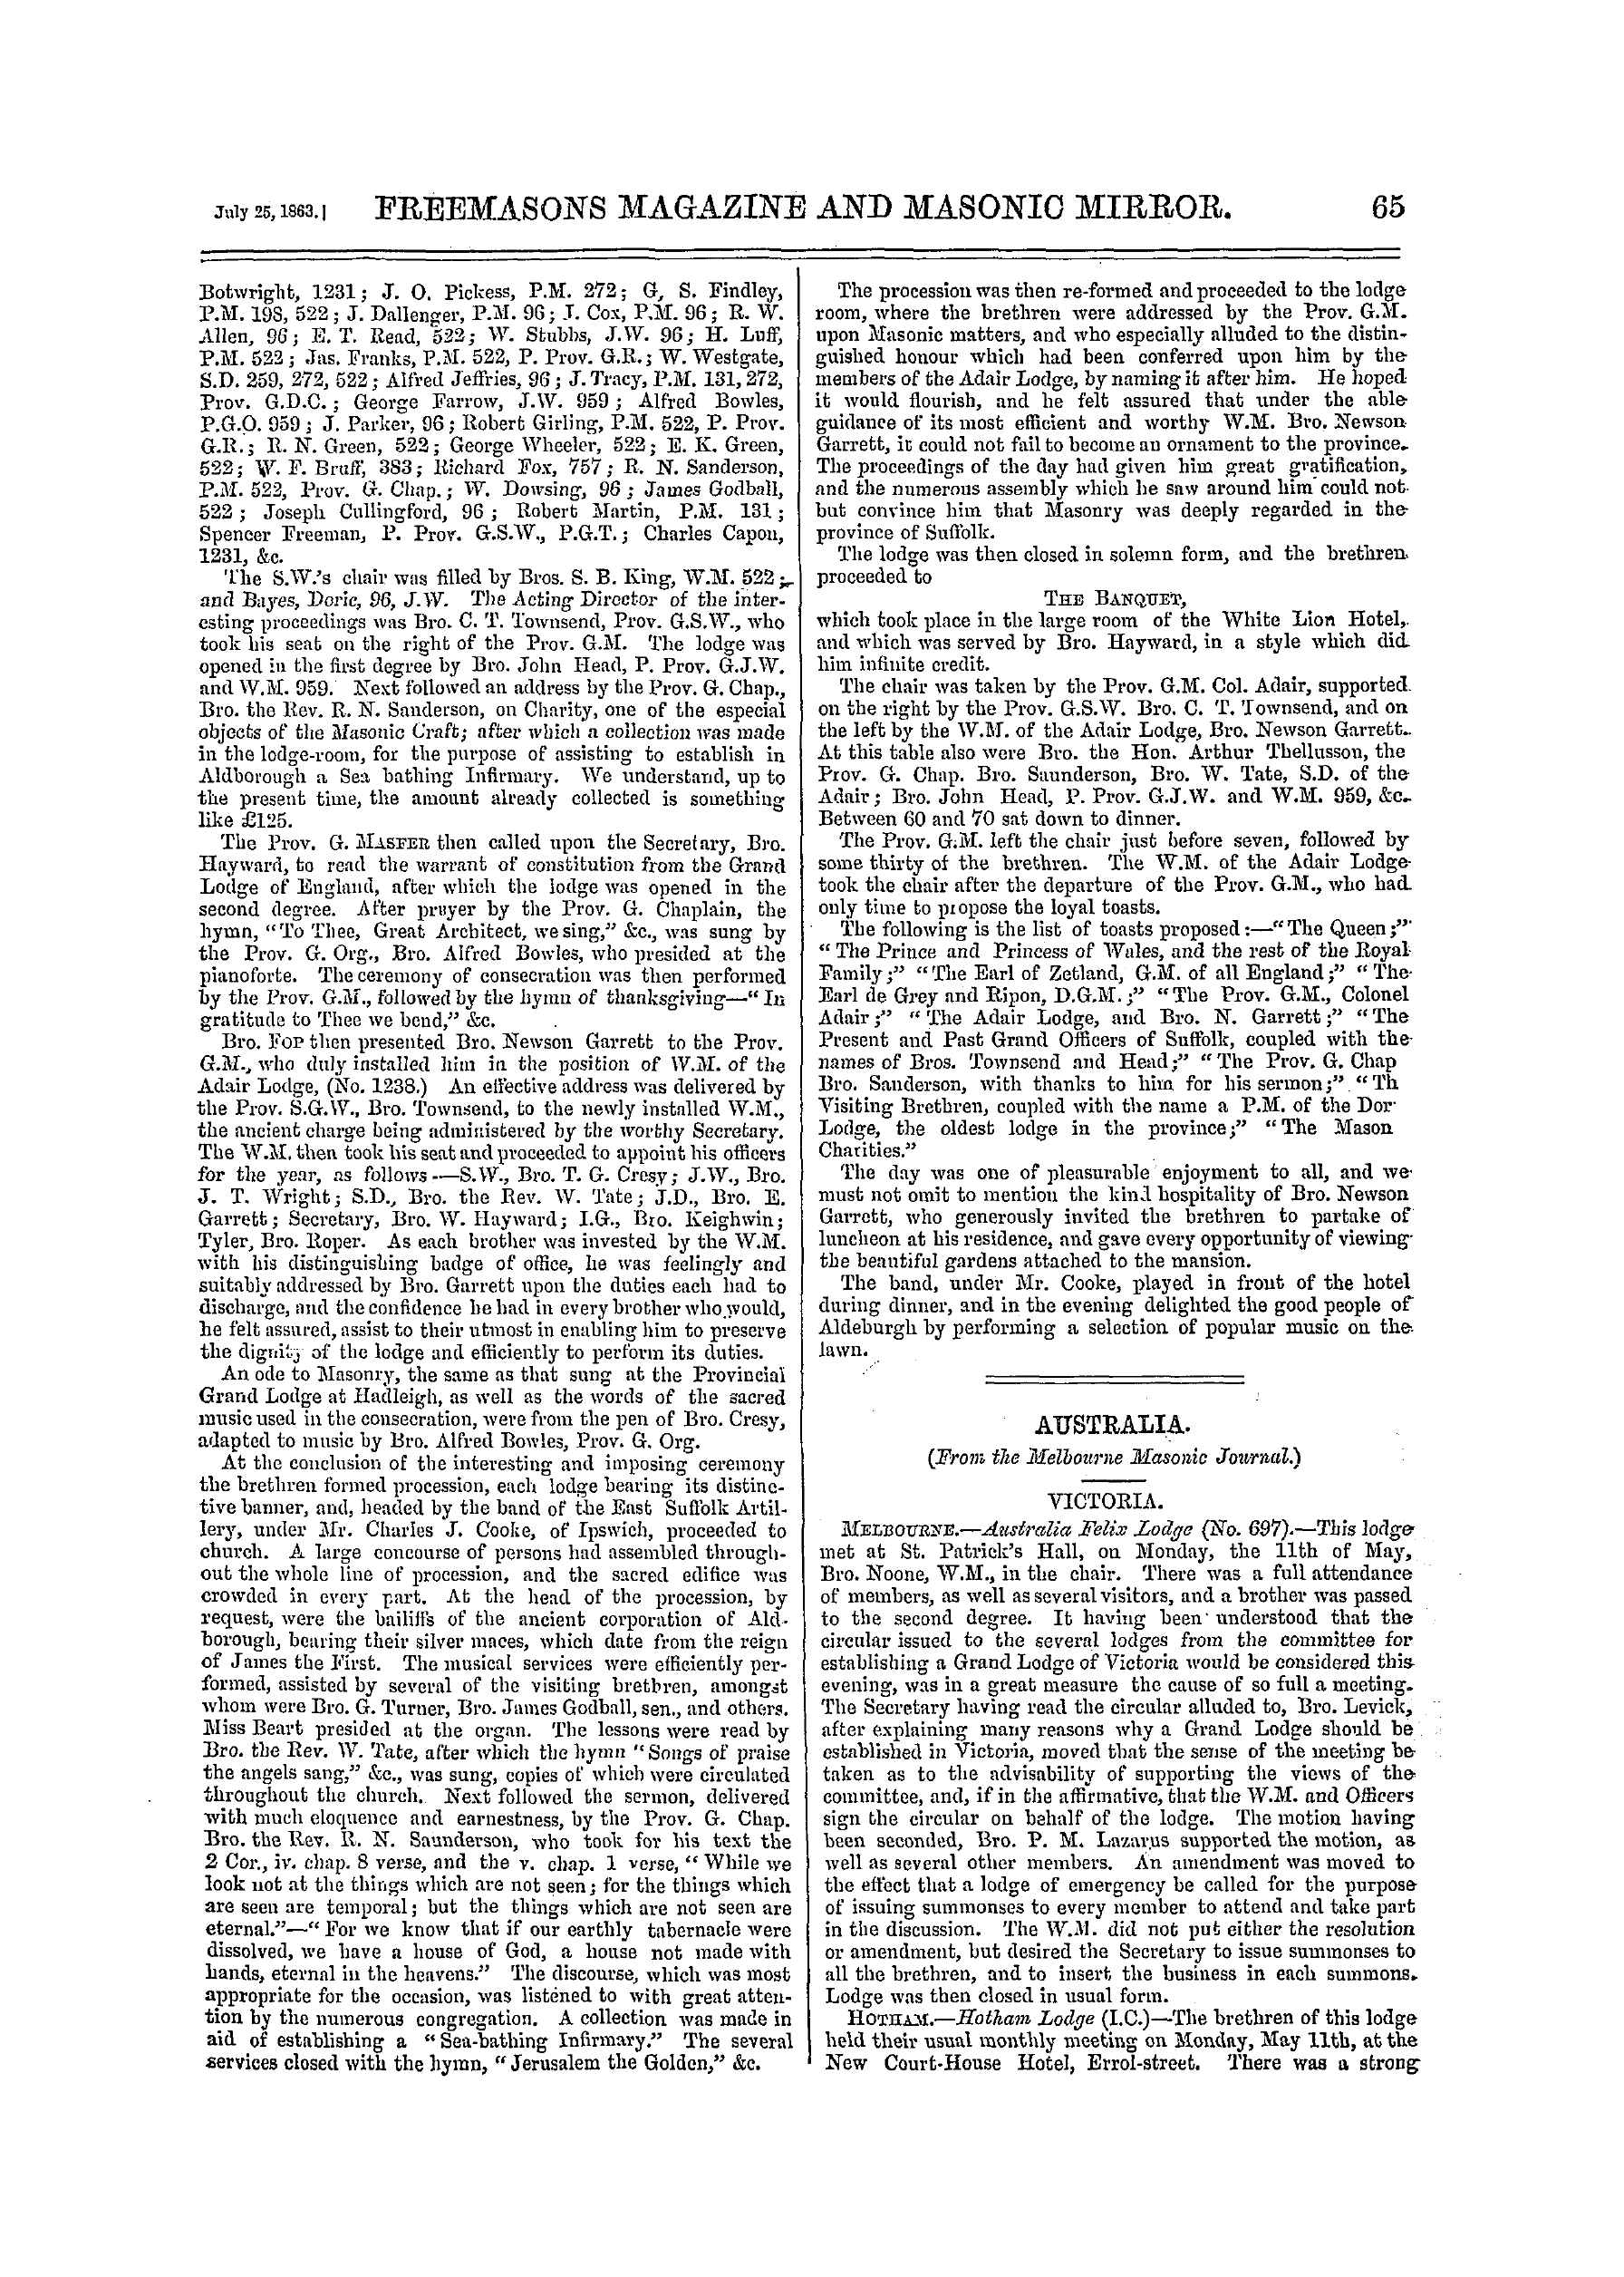 The Freemasons' Monthly Magazine: 1863-07-25: 13